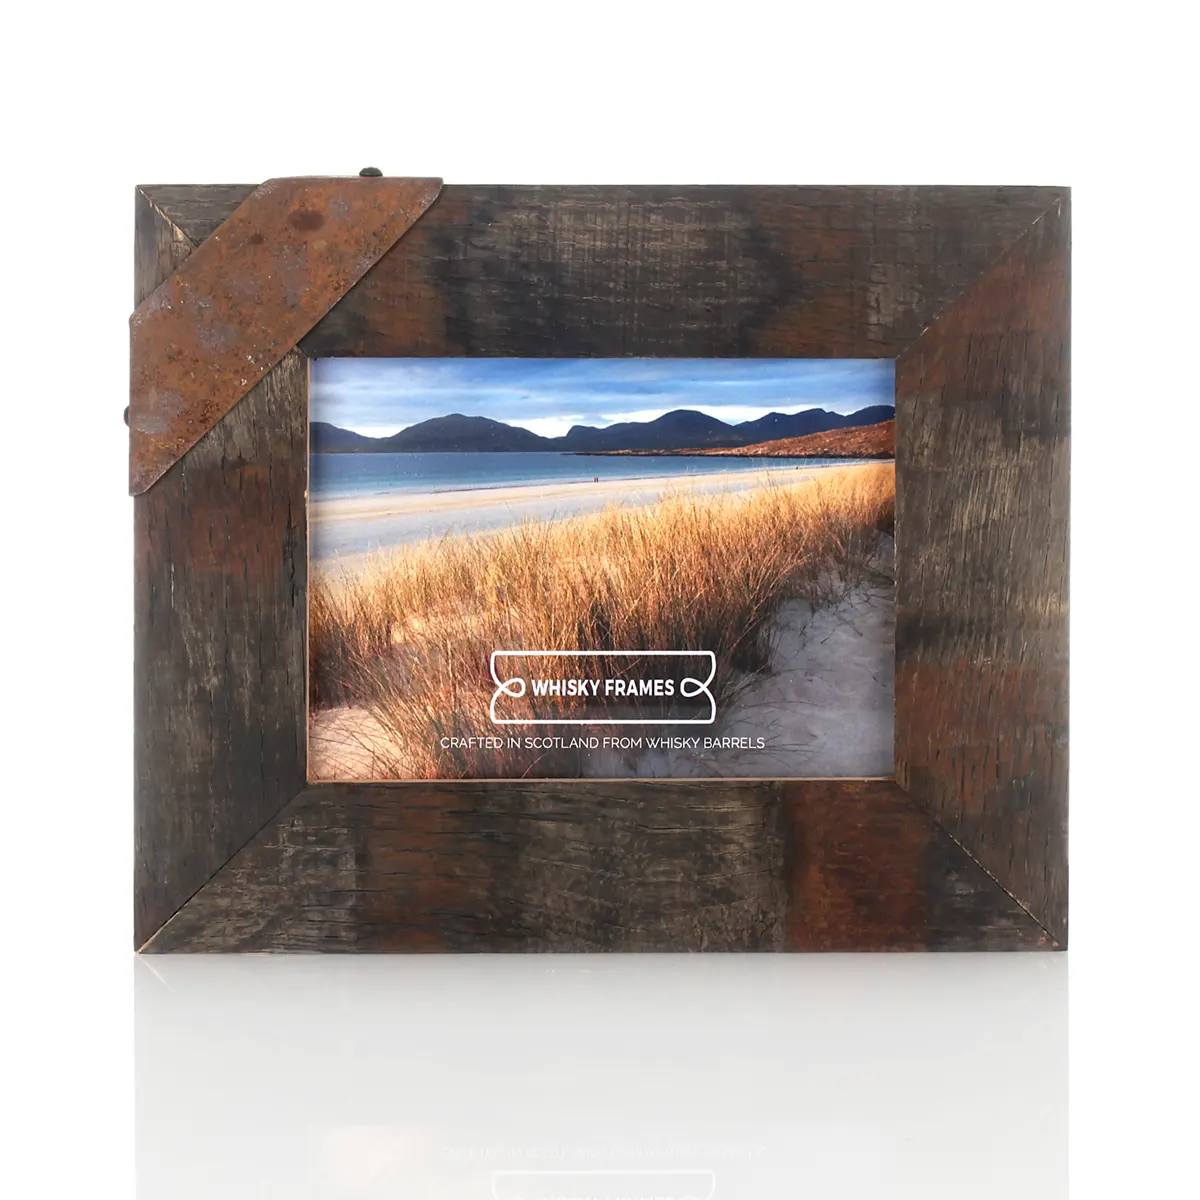 Whiskyfass-Fotorahmen 15x20 cm aus amerikanischer Eiche - Handgefertigt in Schottland